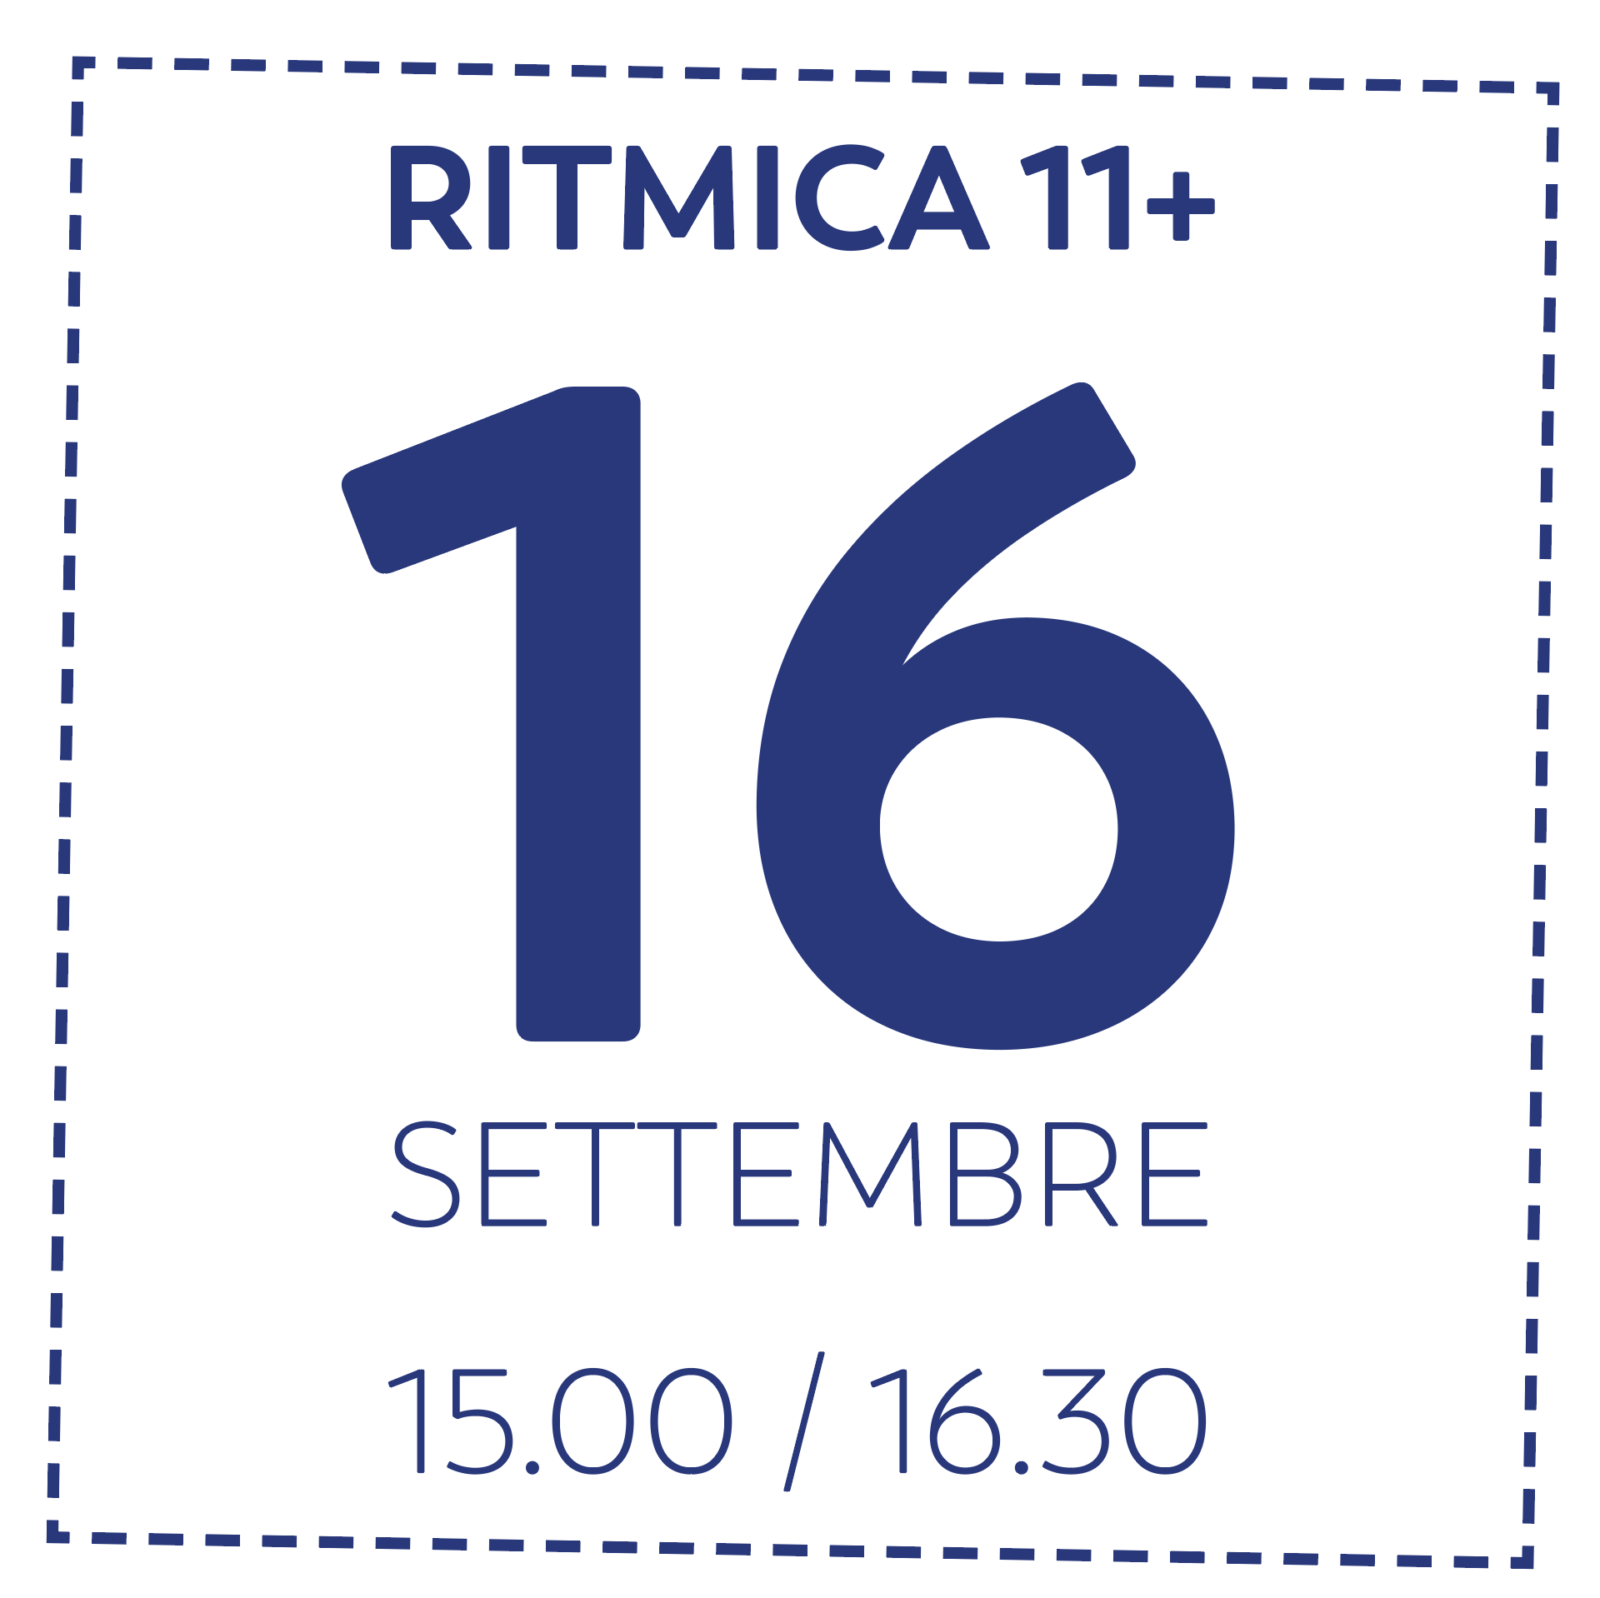 OD RITMICA 11+ - 16/9